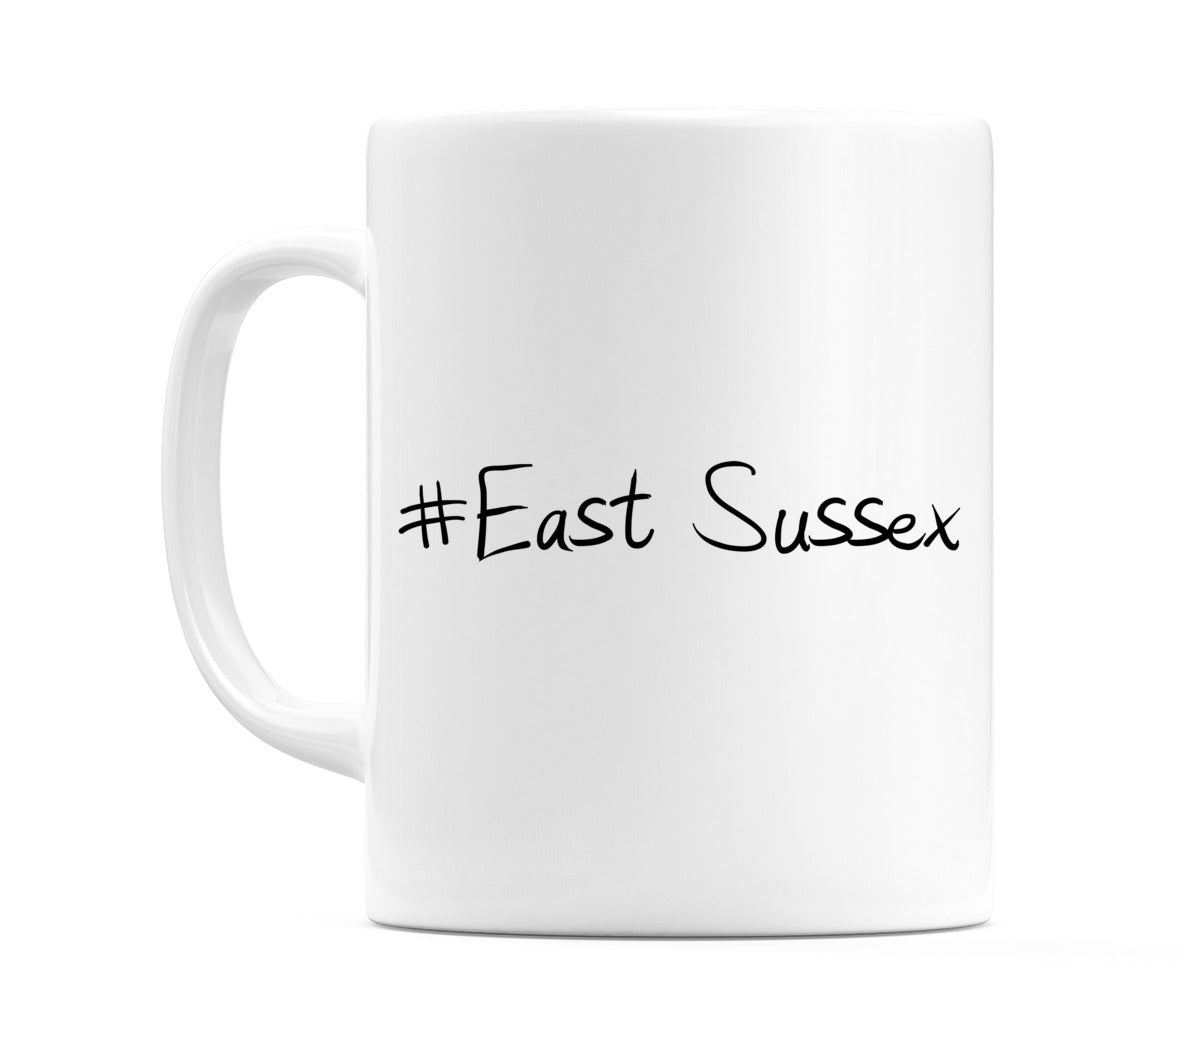 #East Sussex Mug